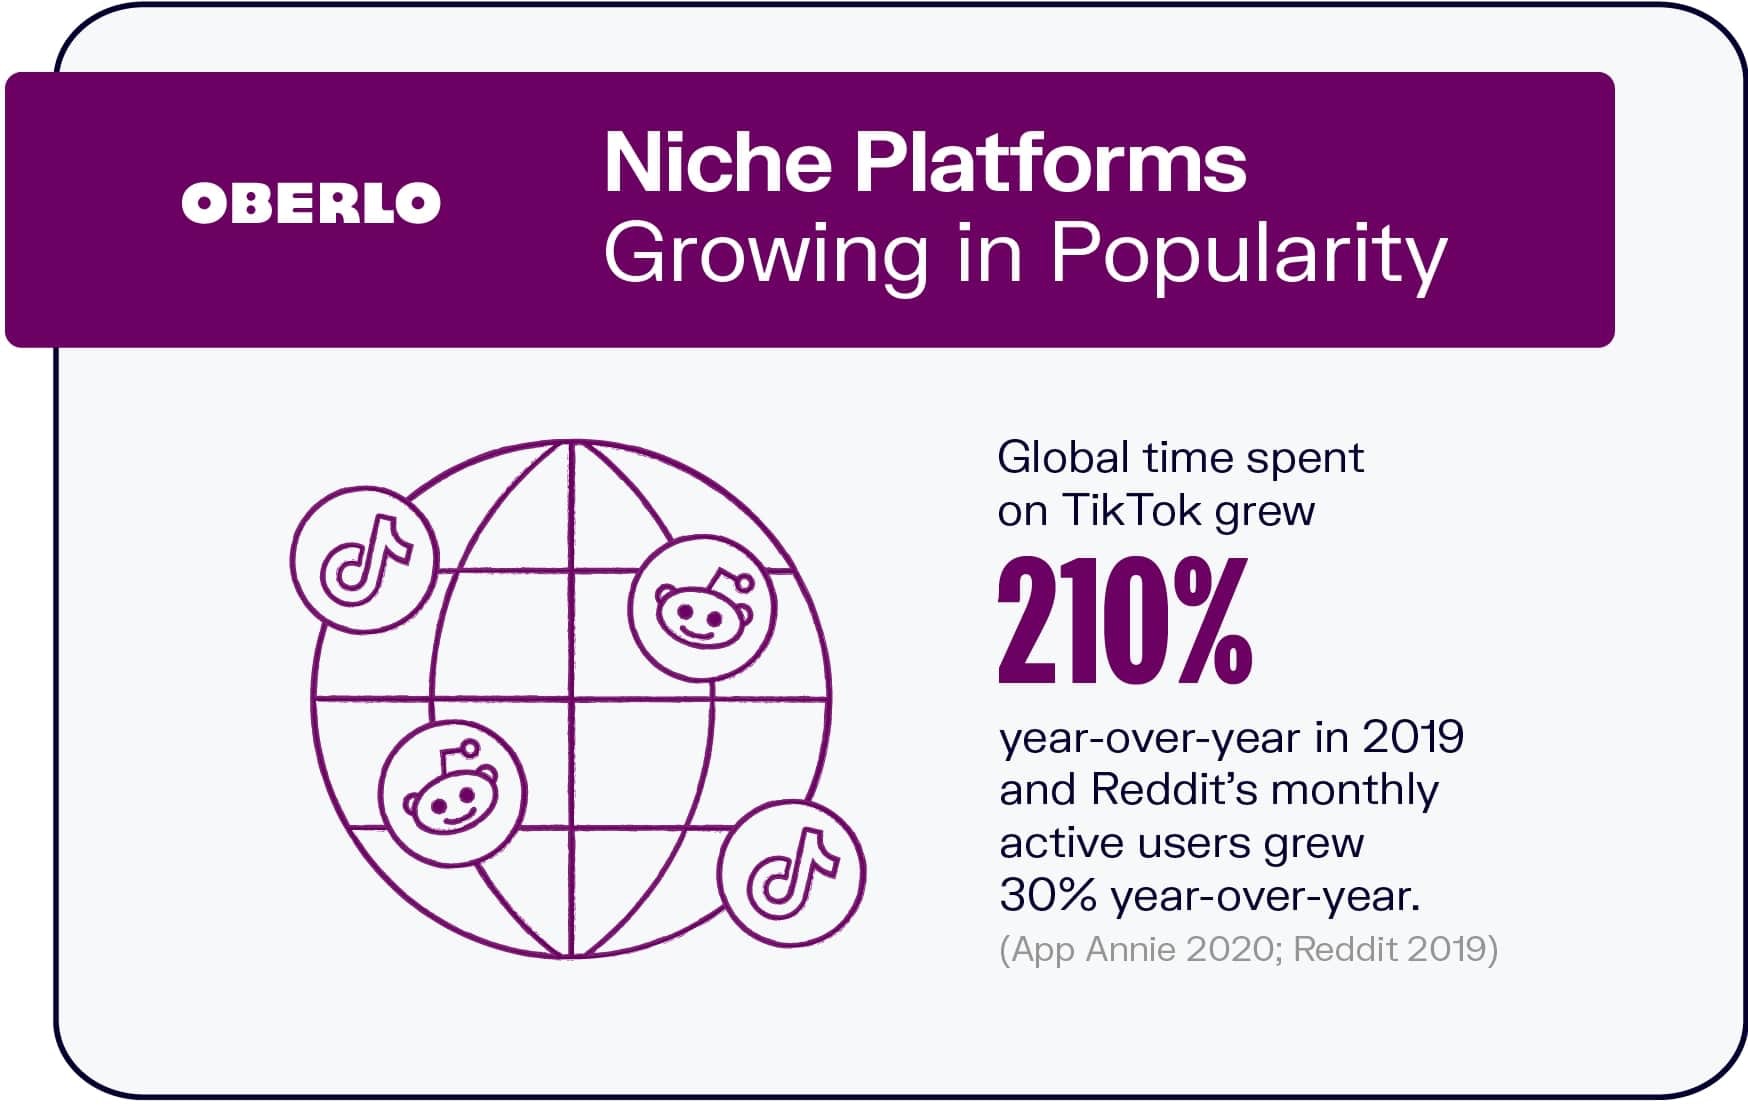 社交媒体趋势:小众平台越来越受欢迎